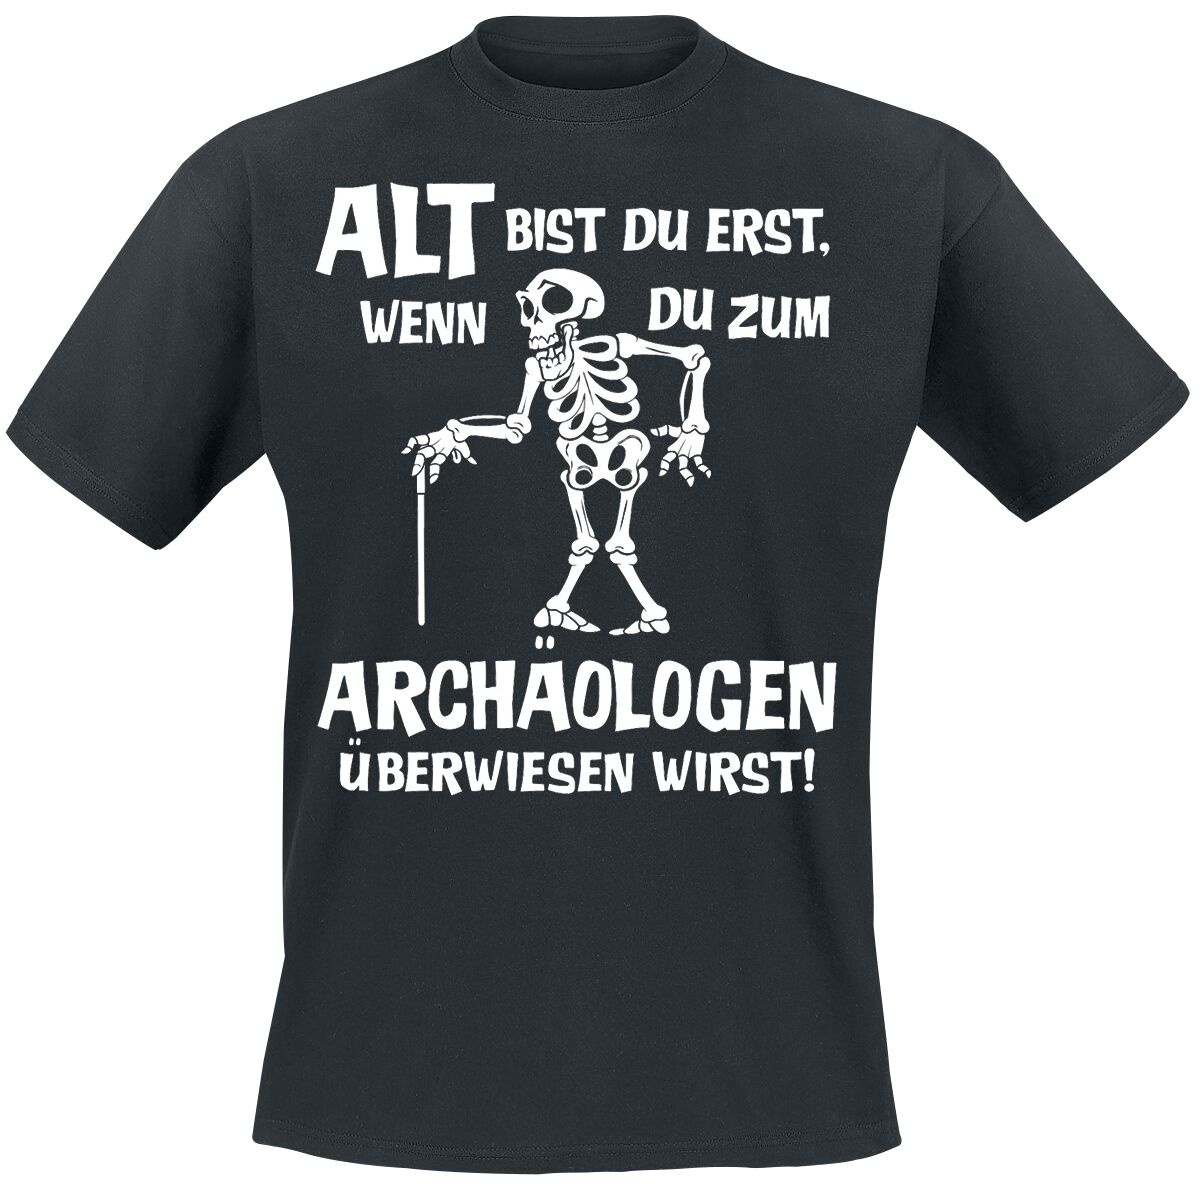 Sprüche T-Shirt - Alt bist du erst, wenn du zum Archäologen überwiesen wirst! - M bis 3XL - für Männer - Größe M - schwarz - M